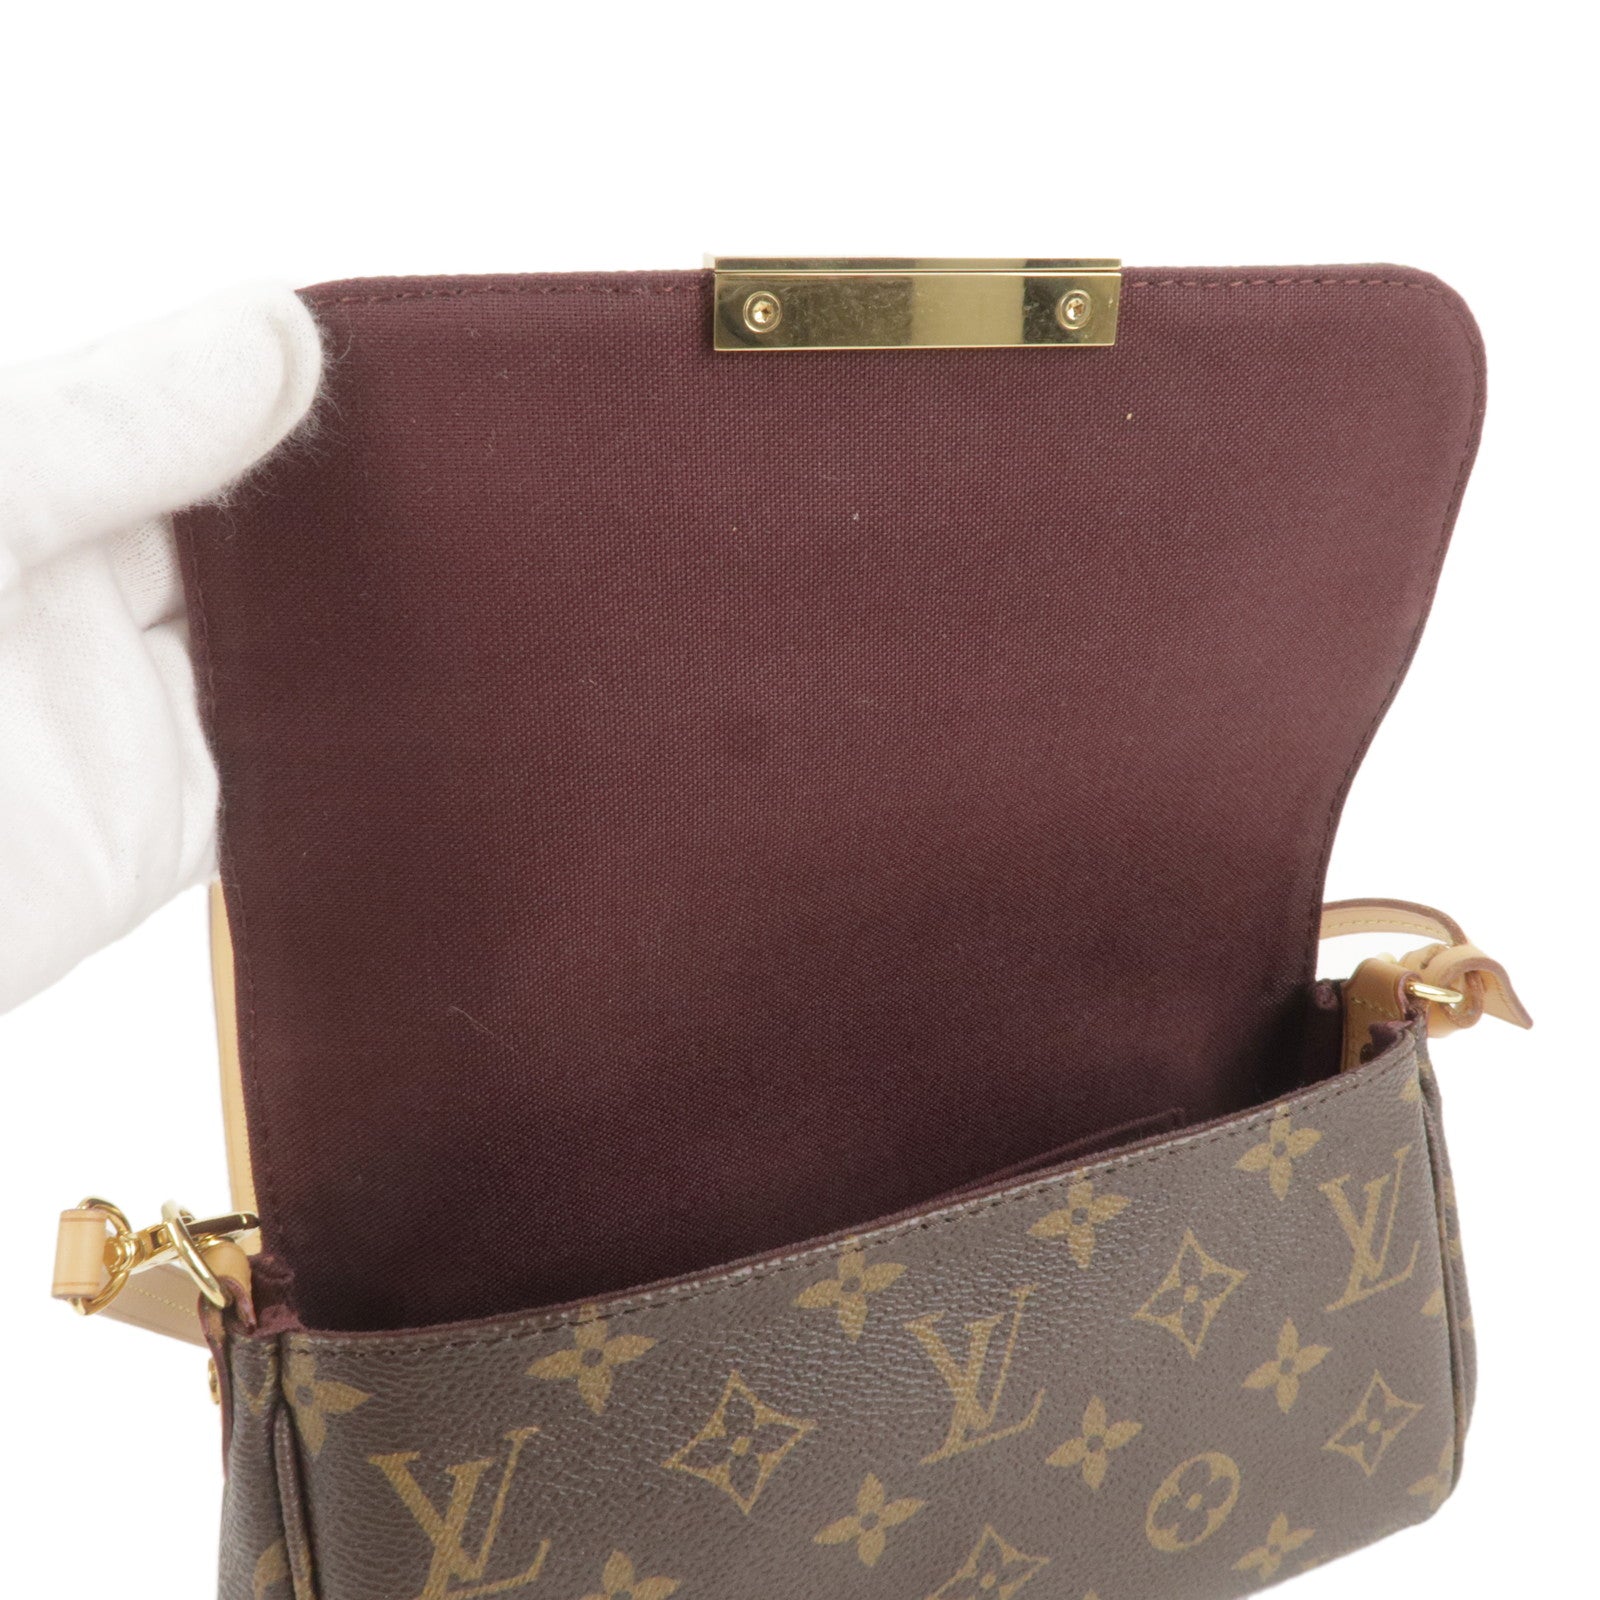 1:1 Louis Vuitton on X: PM Shoulder Bag Monogram M40717 Size: W